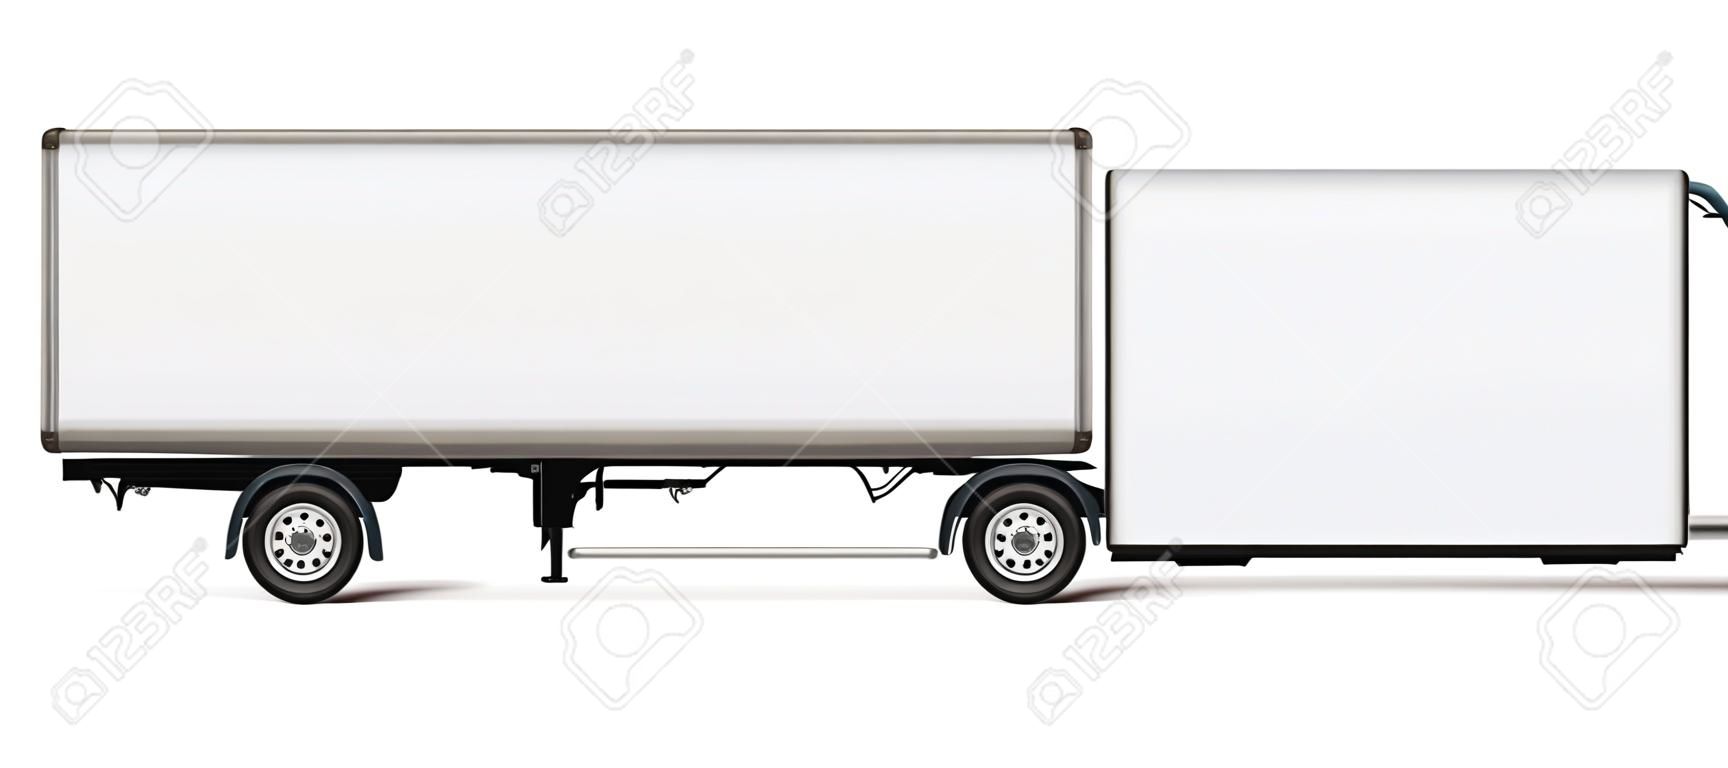 Modello di vettore del camion del semirimorchio. Autocarro isolato con rimorchio su bianco per il marchio del veicolo, identità aziendale. Tutti gli elementi nei gruppi su livelli separati per una facile modifica e ricolorazione